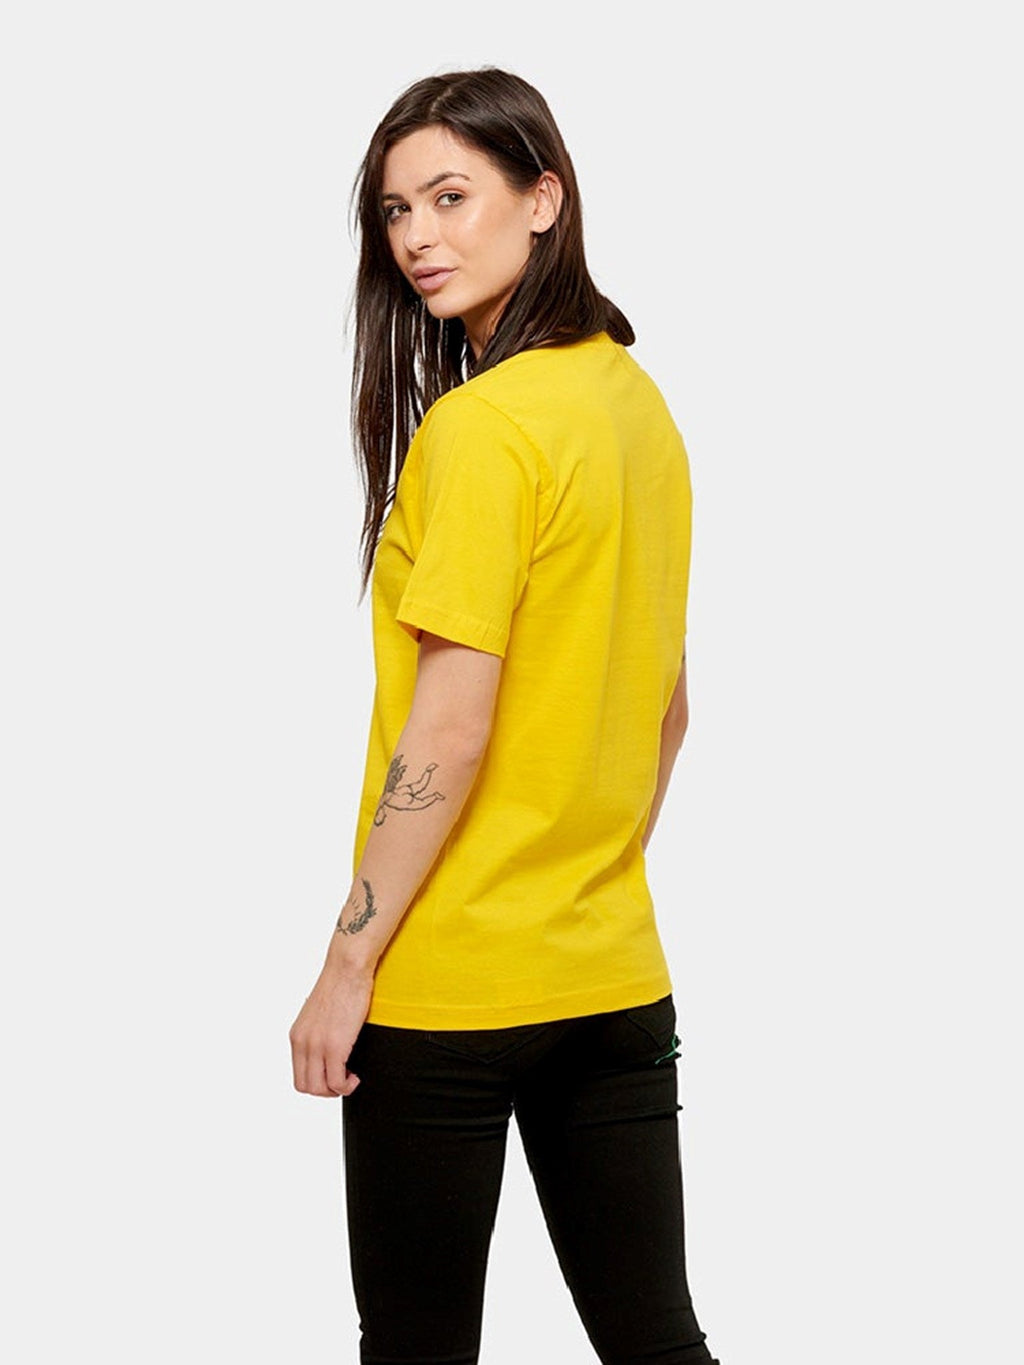 Prevelika majica - žuta